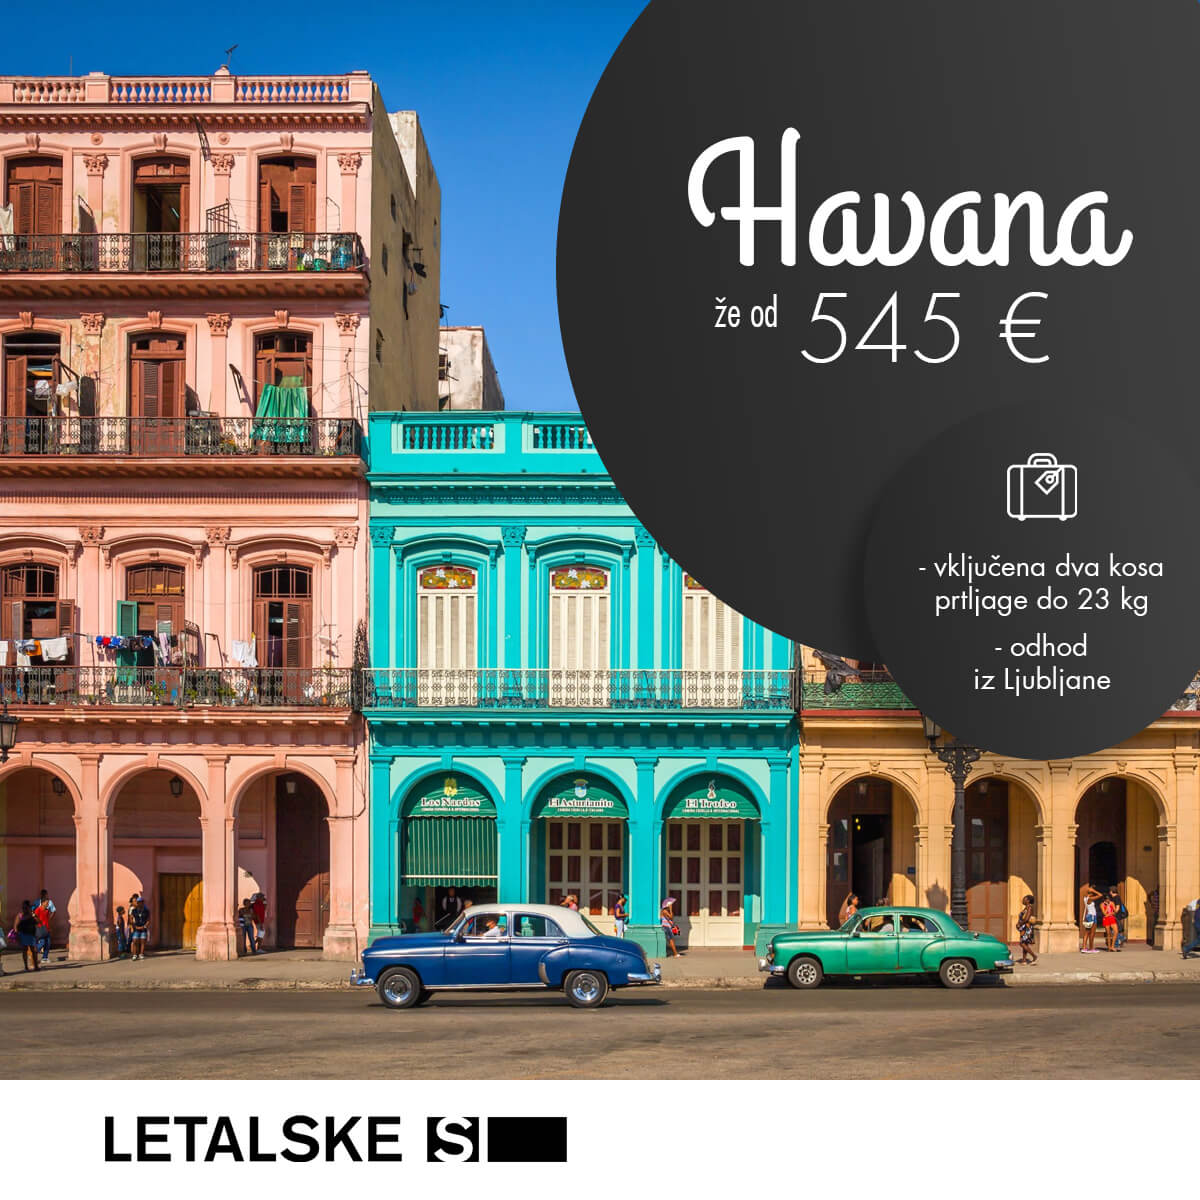 Havana vizual, Havana već od 4560 kuna, Havana jeftine avio karte, putovanje u Havanu 